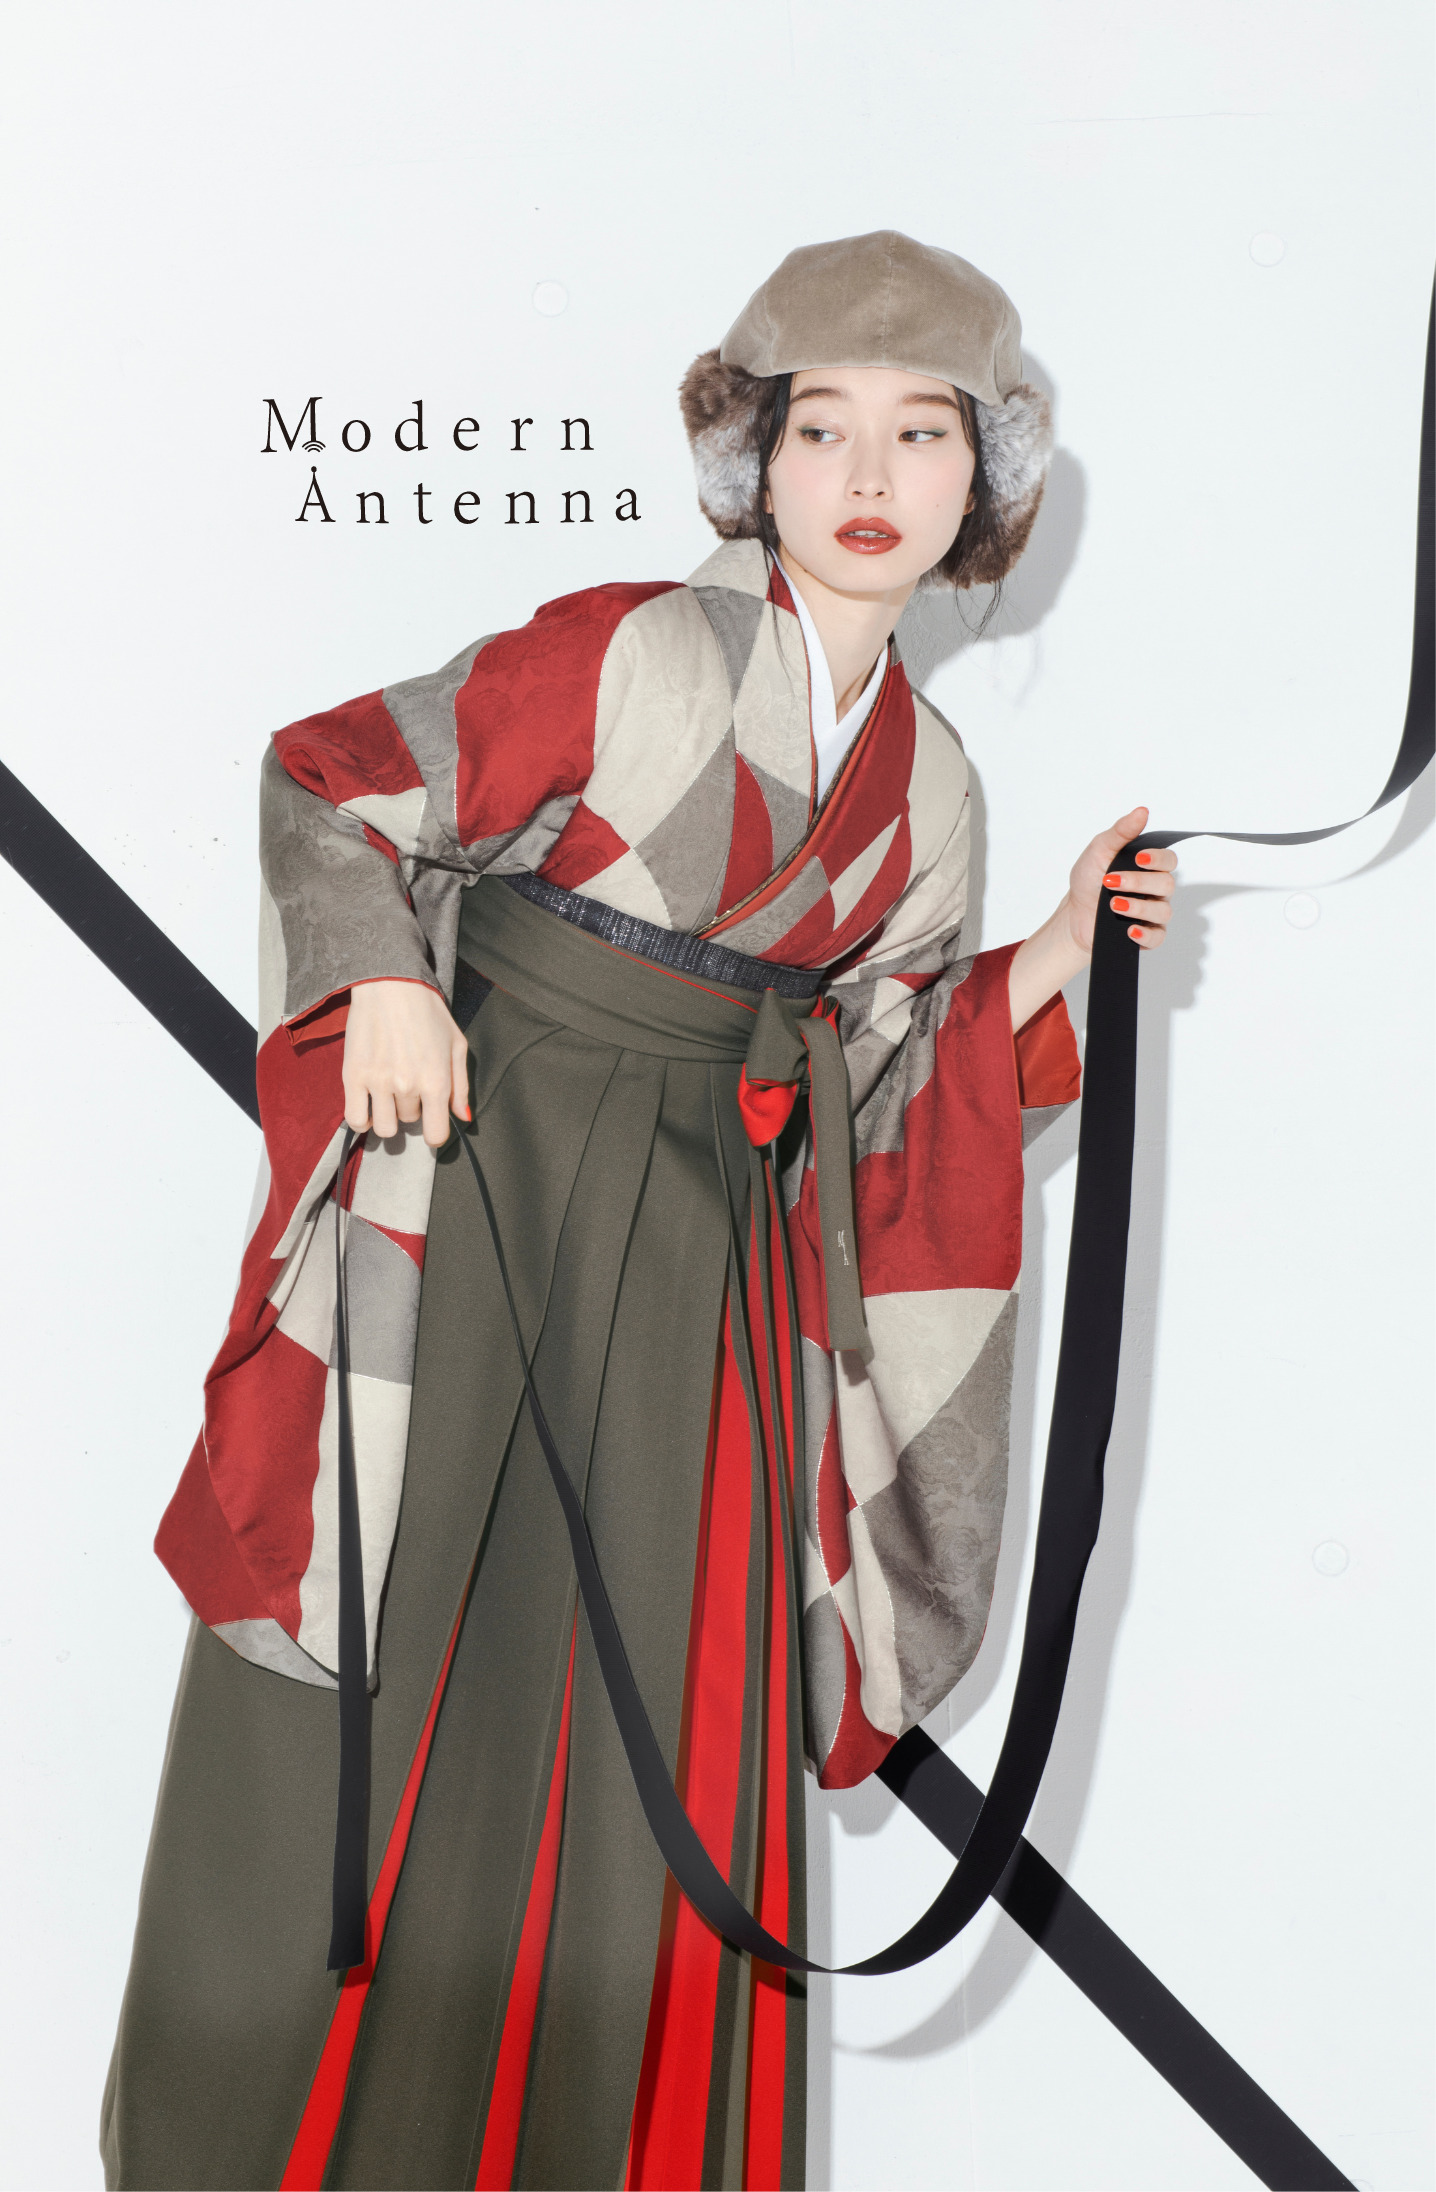 モダンアンテナ（Modern Antenna）ブランドの、赤の幾何学模様の二尺袖と、グレーと赤の袴の女性用卒業式袴を着用したアップ写真